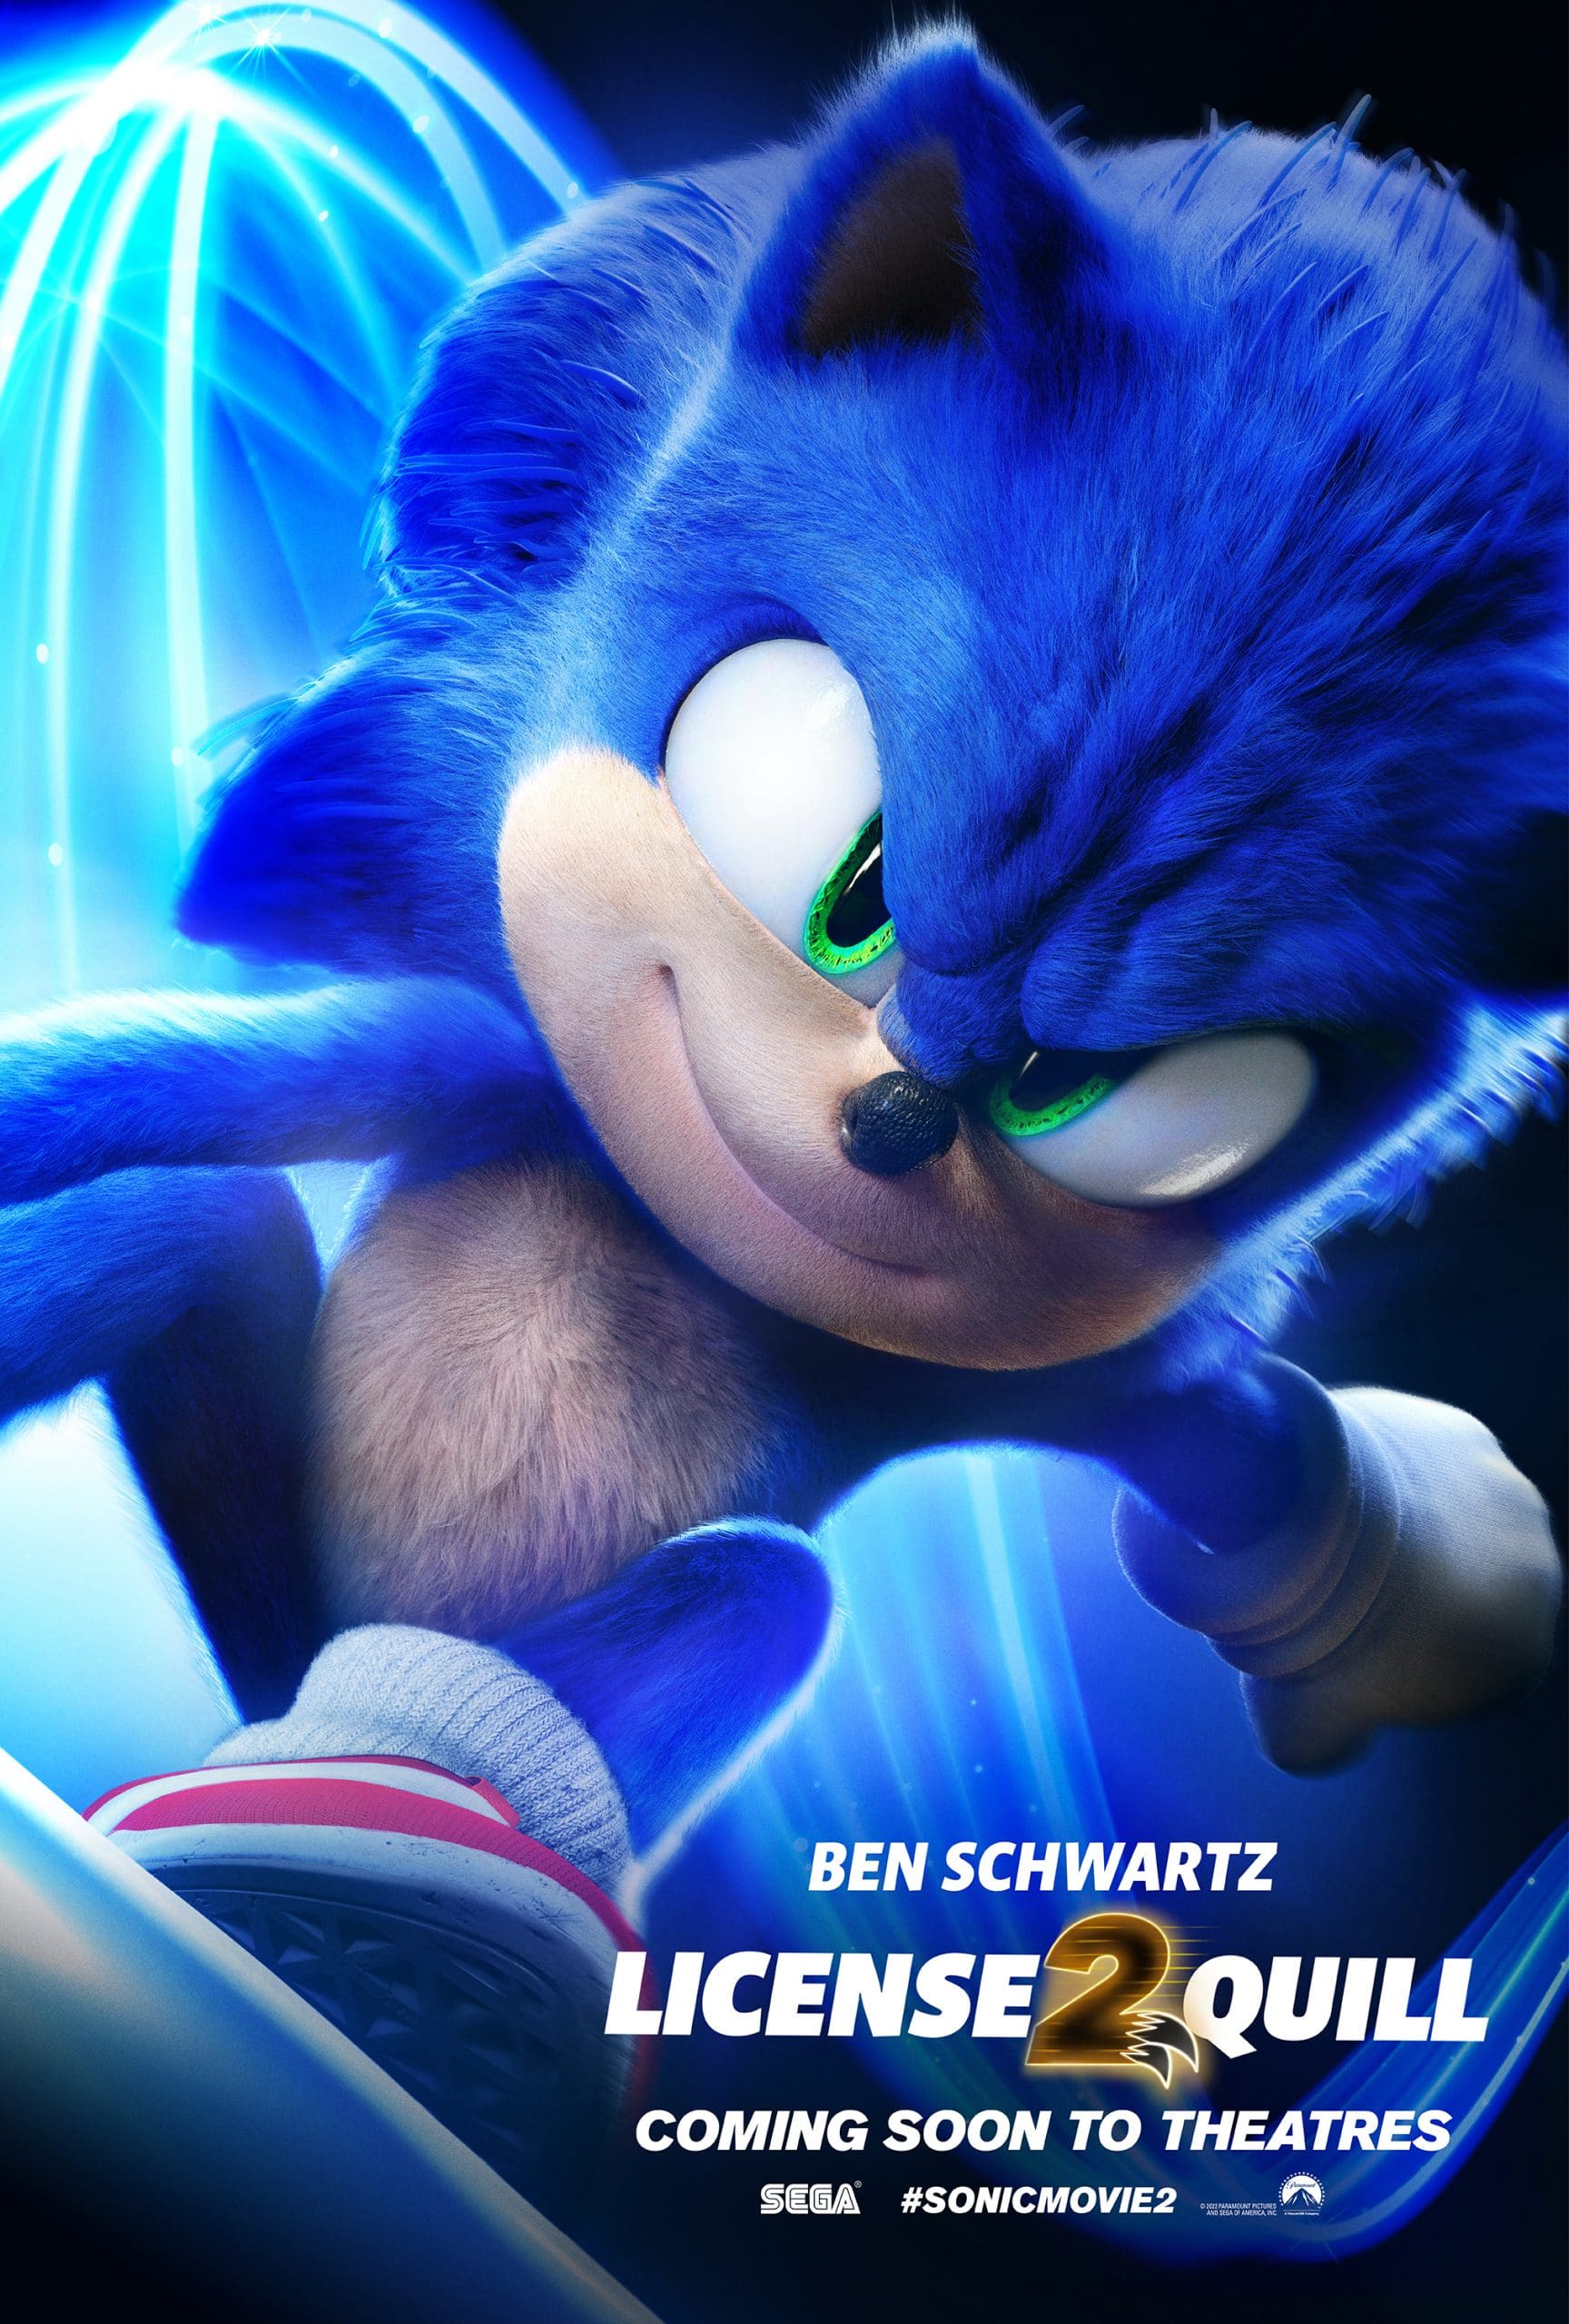 Sonic 2 - O Filme - 2022